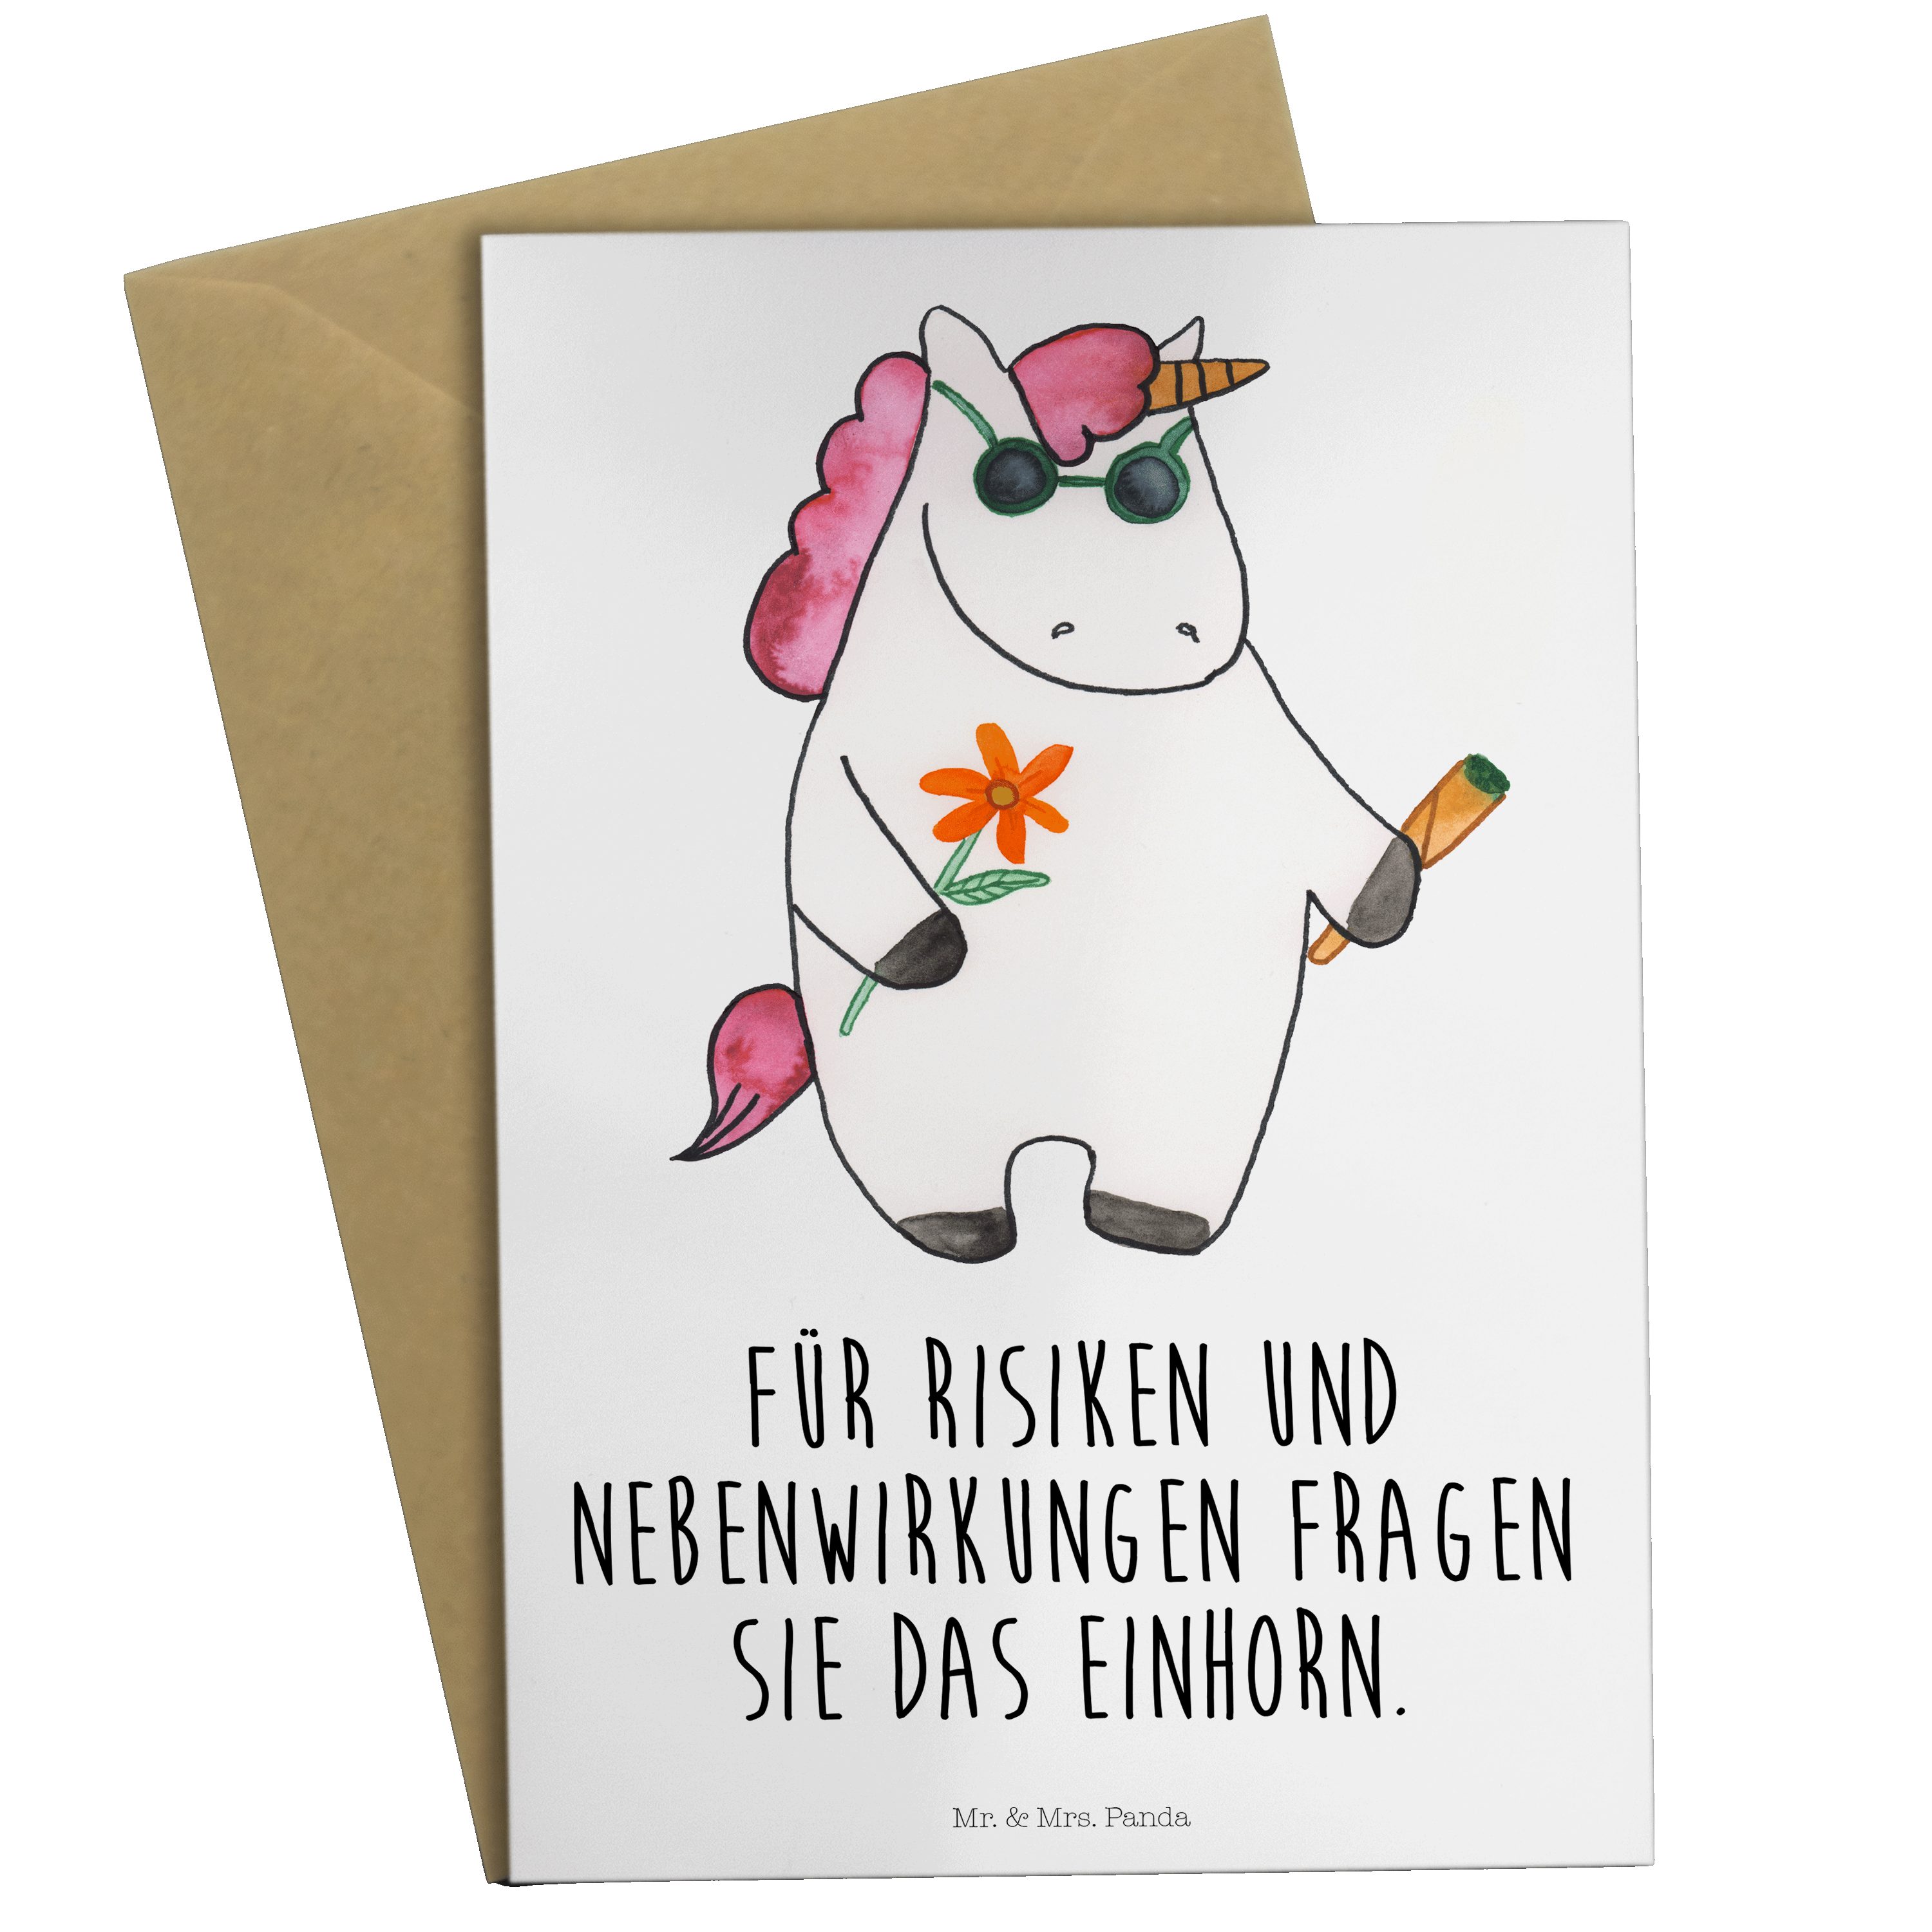 Mr. & Mrs. Panda Grußkarte Einhorn Woodstock - Weiß - Geschenk, Einhorn Deko, Einladungskarte, U